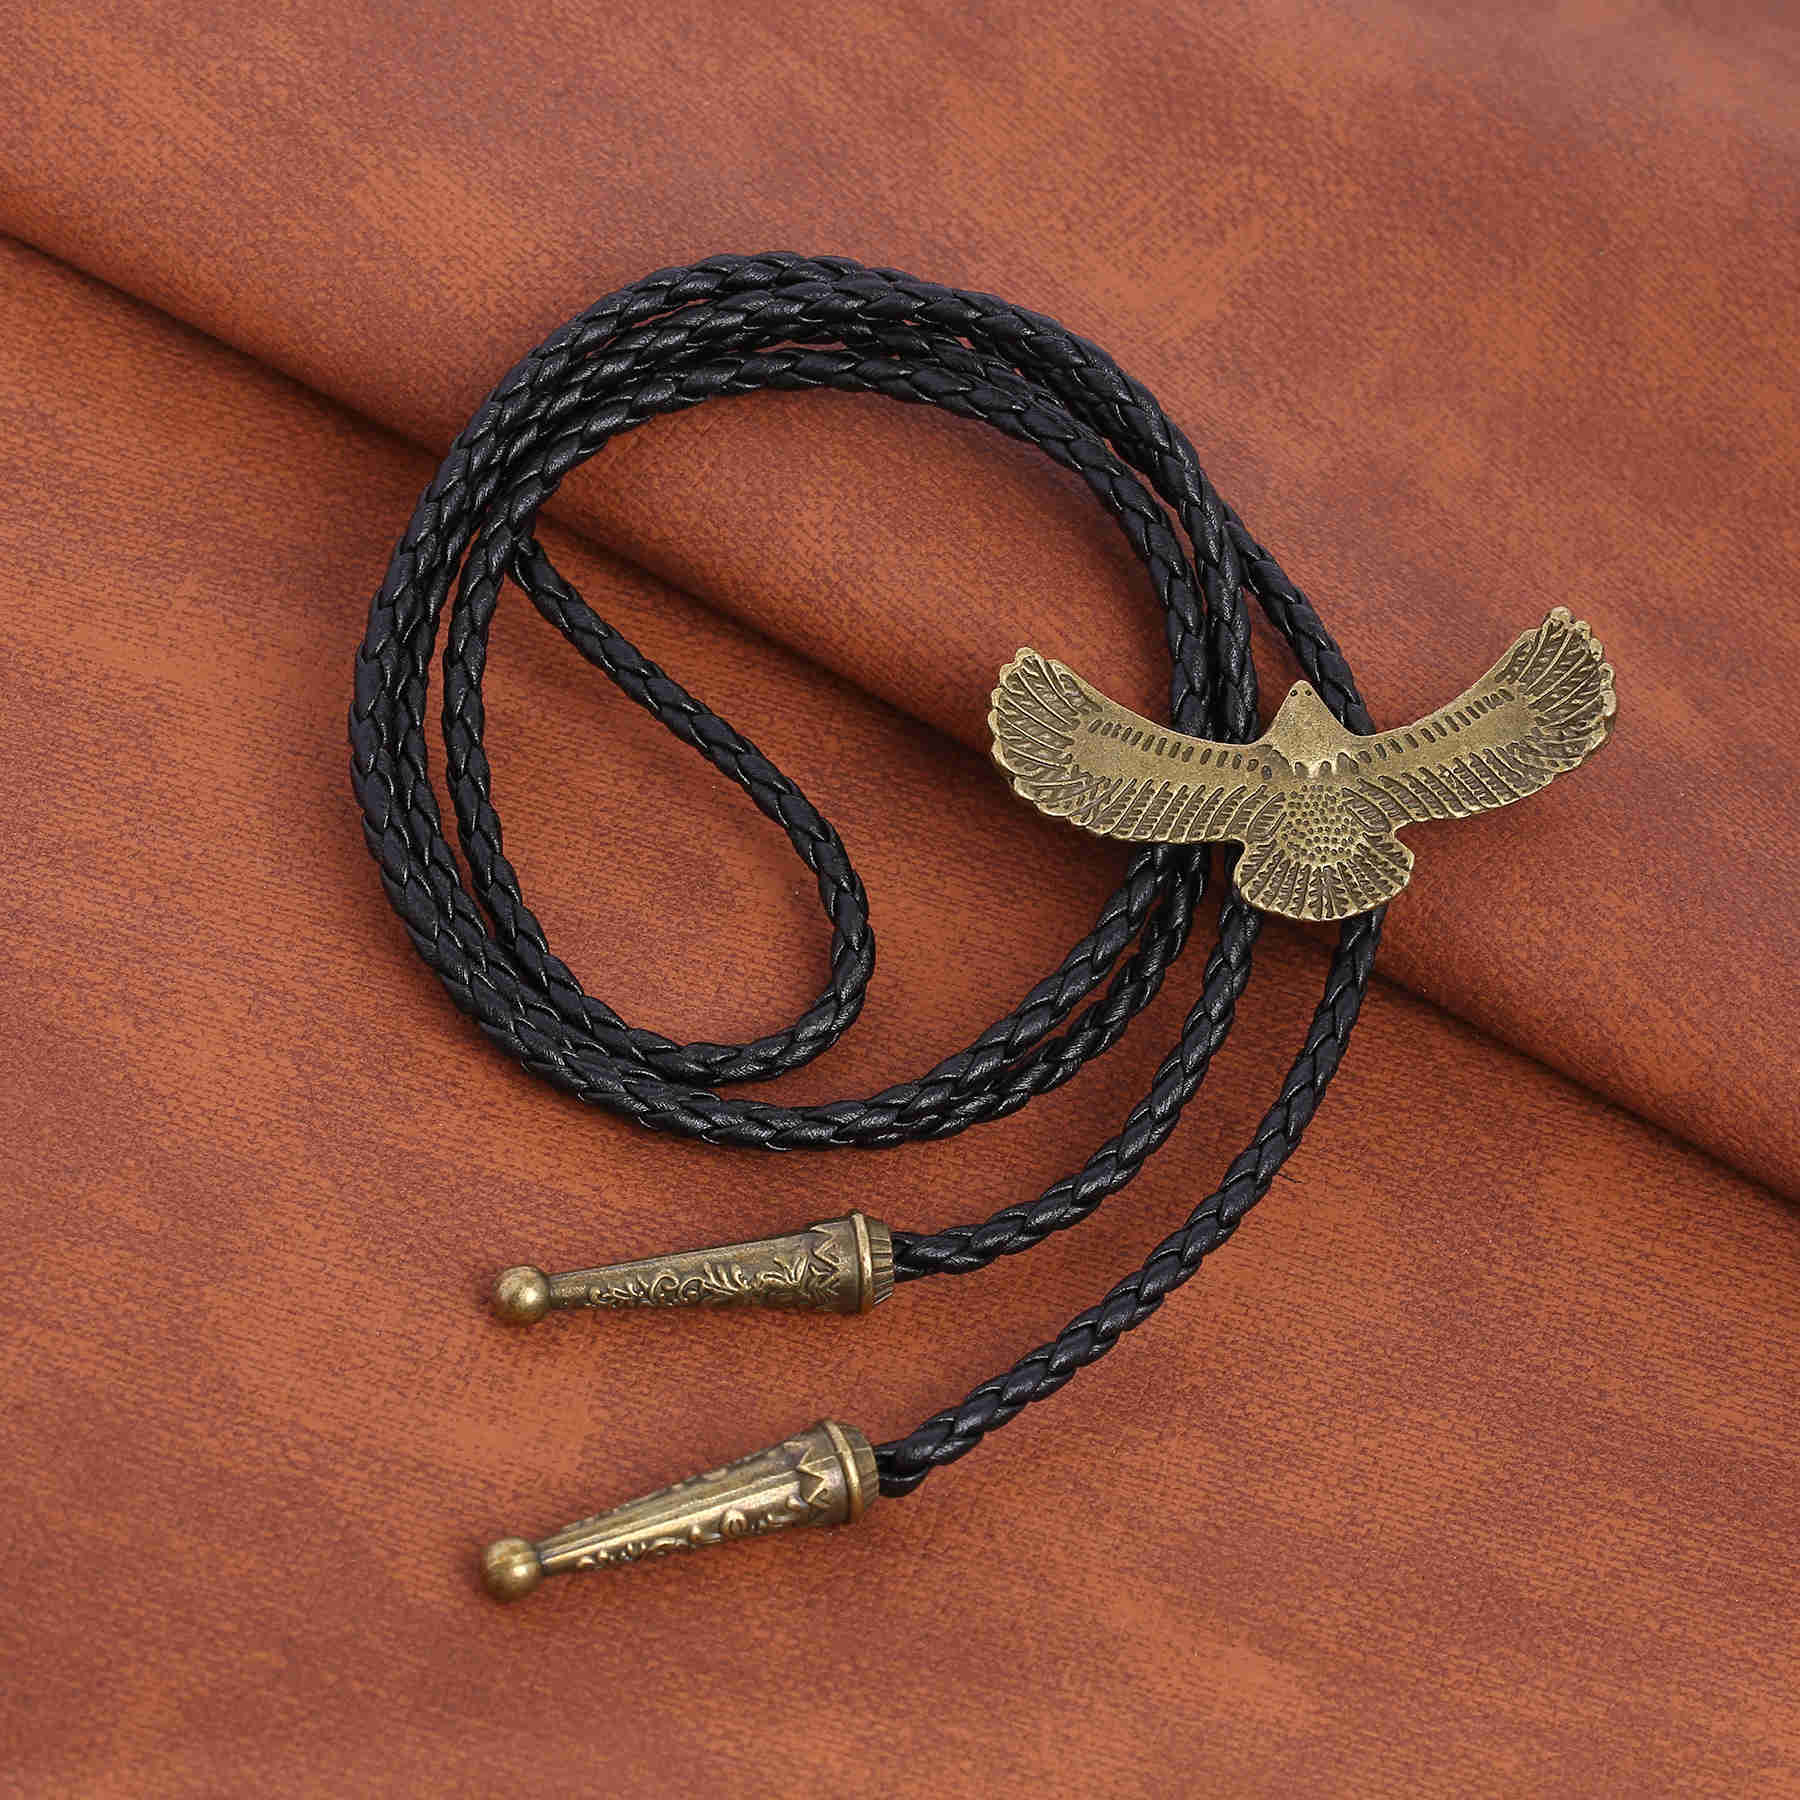 Bolo Ties Dance Rodeo Bola Men Bolo Tie Western Cowboy Leather Belt Slips HKD230719